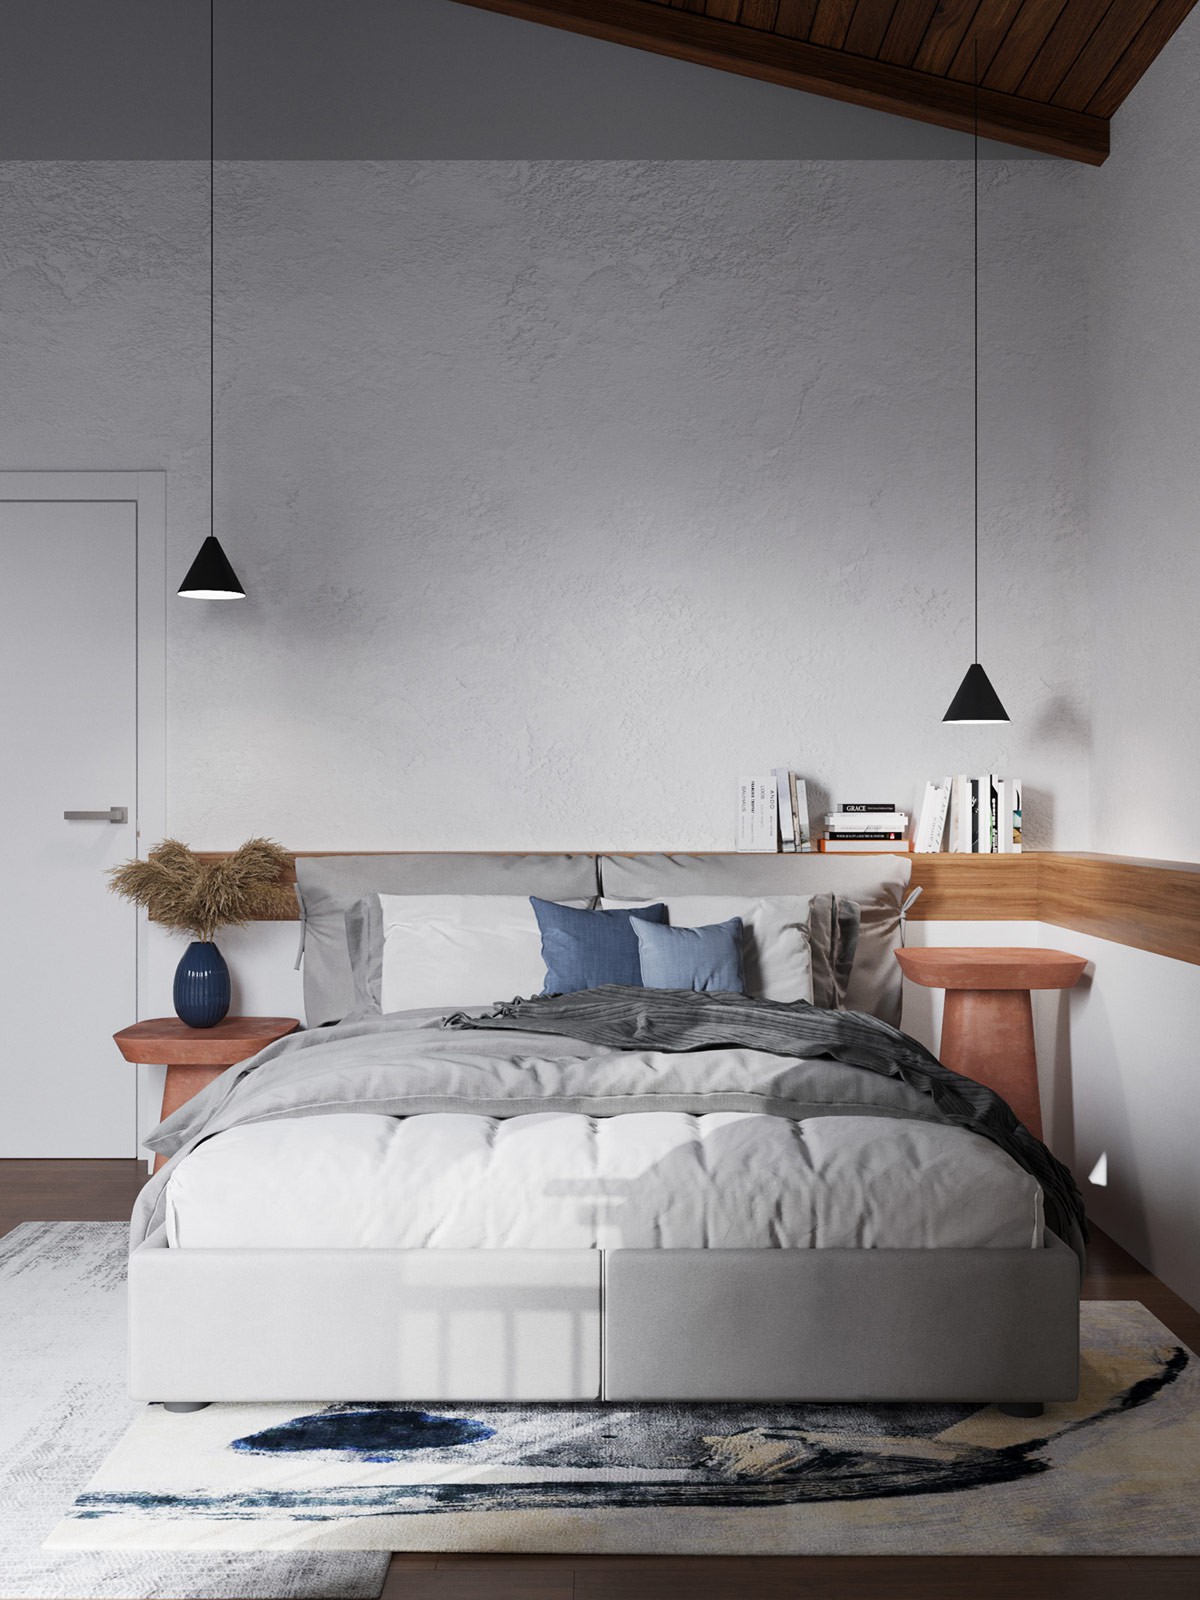 Hình ảnh phòng ngủ hiện đại với giường thấp, tab đầu giường bằng gỗ, đèn thả màu đen